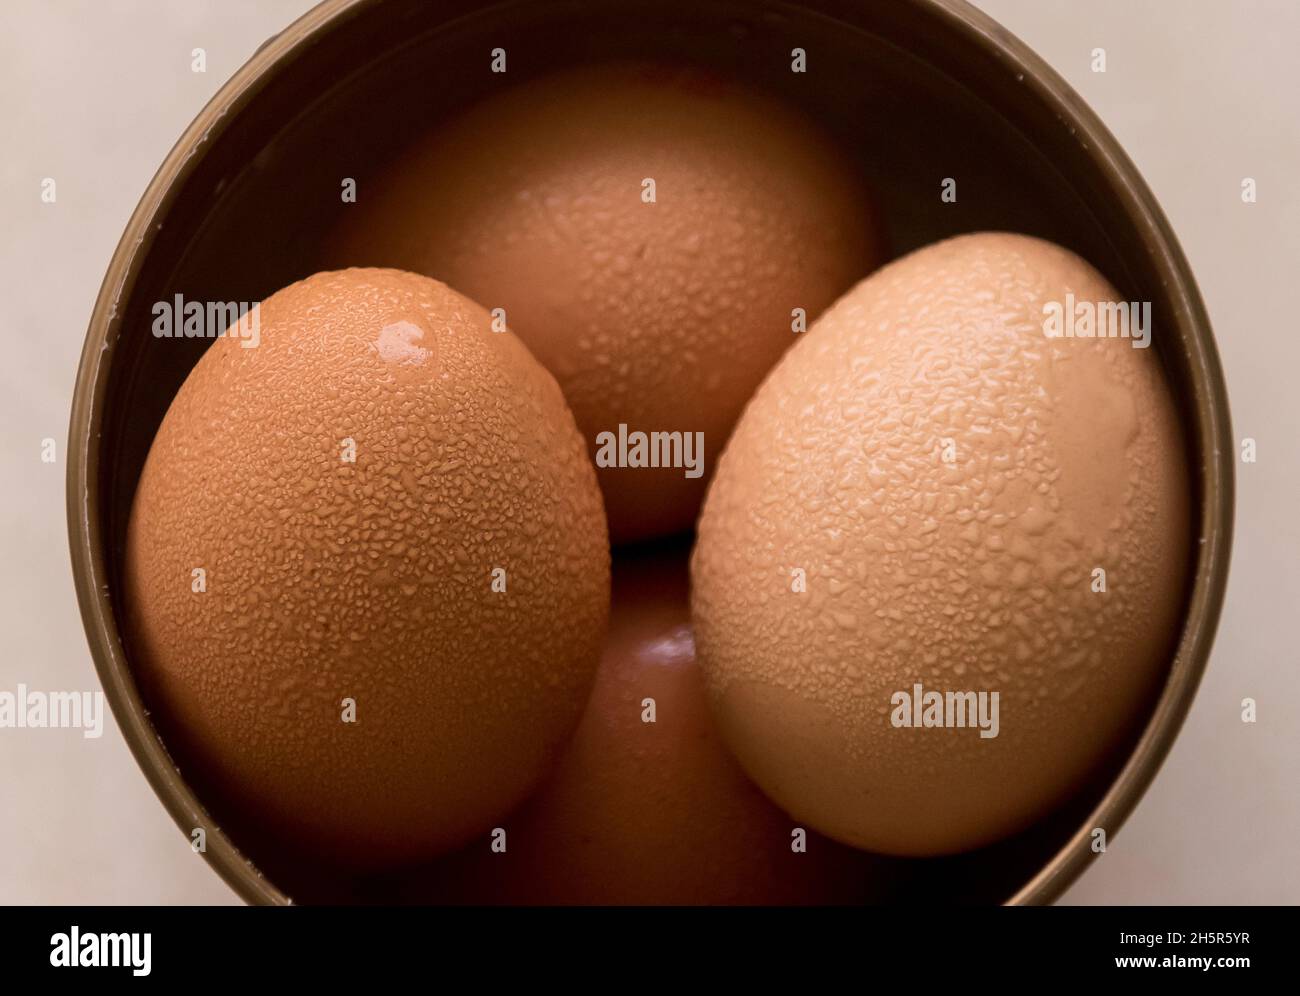 Cuatro huevos de gallinas marrones en un tazón redondo con conchas cubiertas de condensación. Se lleva del frigorífico a la temperatura ambiente cálida y húmeda en un ambiente cálido y húmedo. Foto de stock